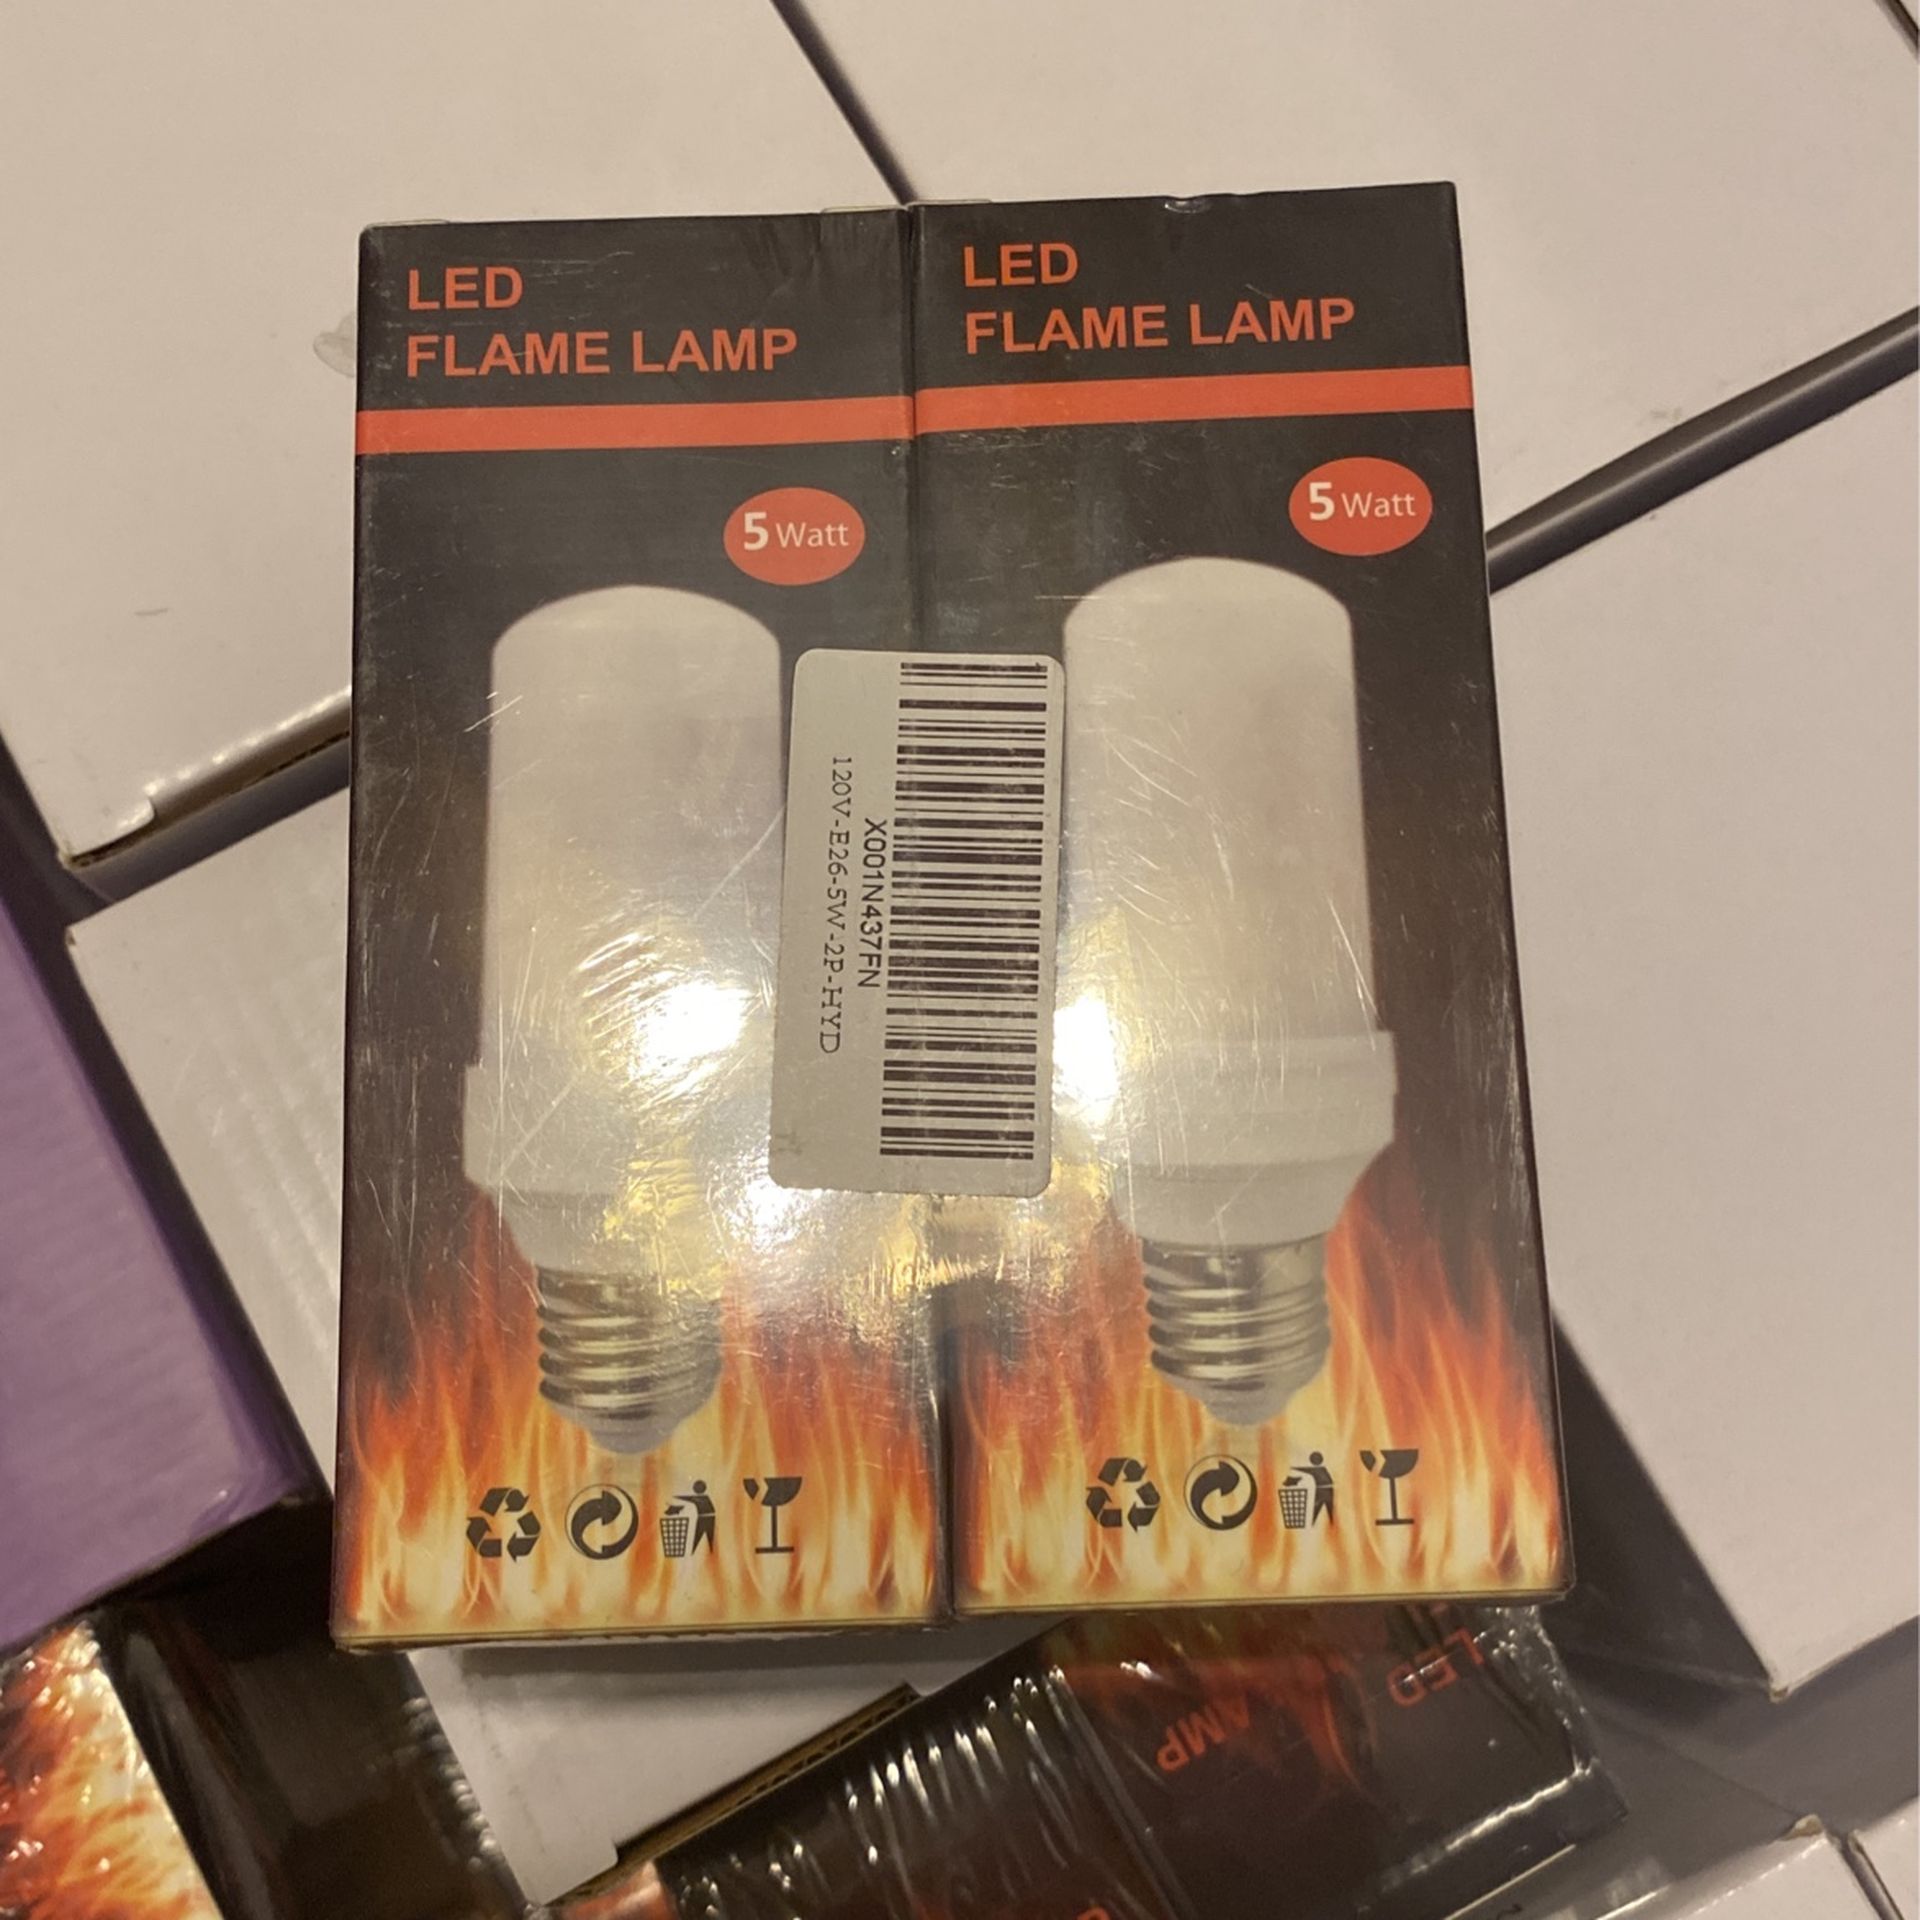 LED FLAME LAMP BALD 